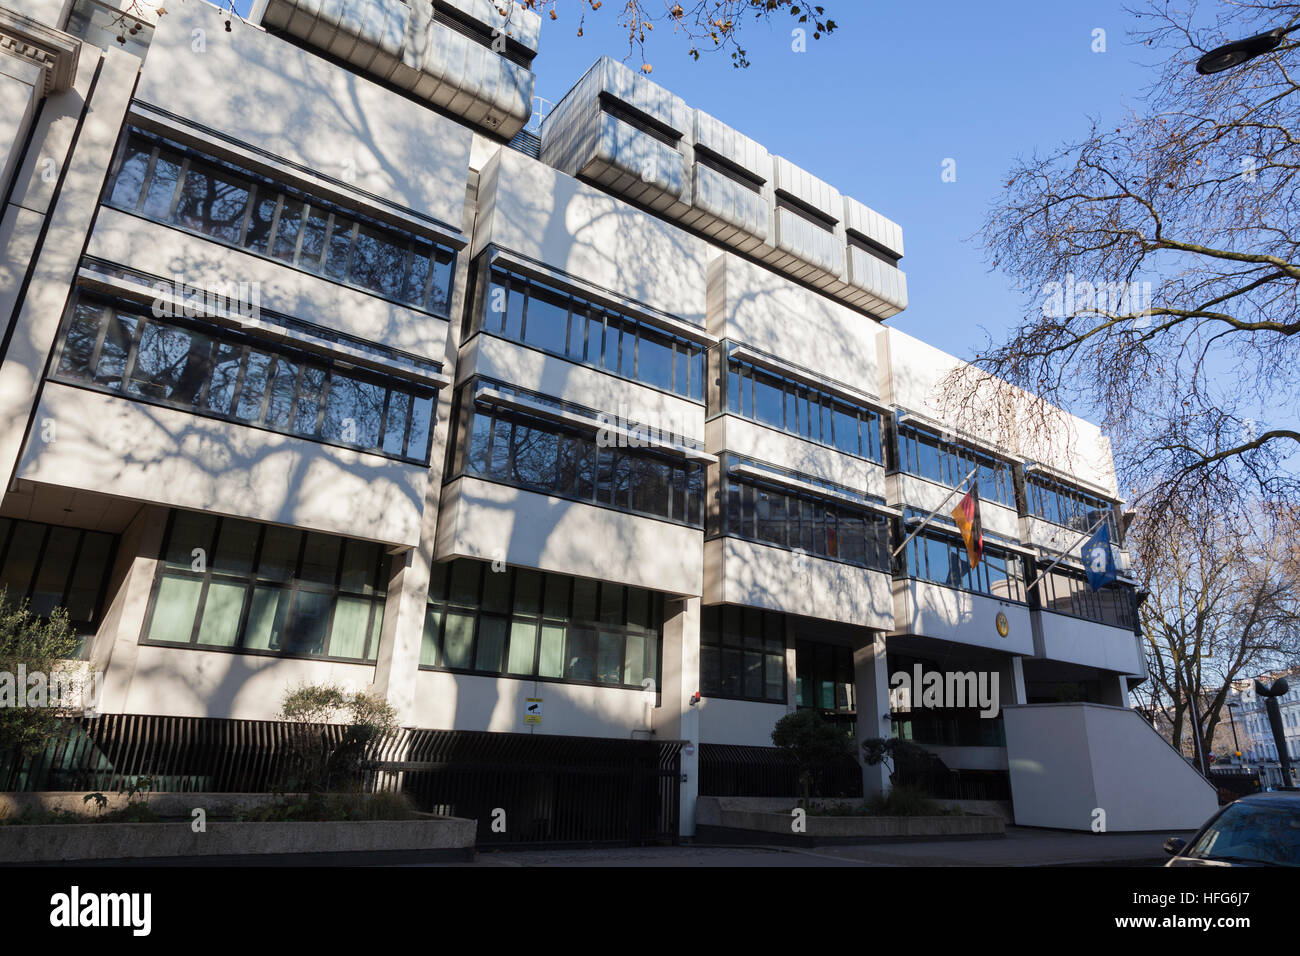 Deutsche Botschaft, Chesham Place, London Stockfotografie - Alamy